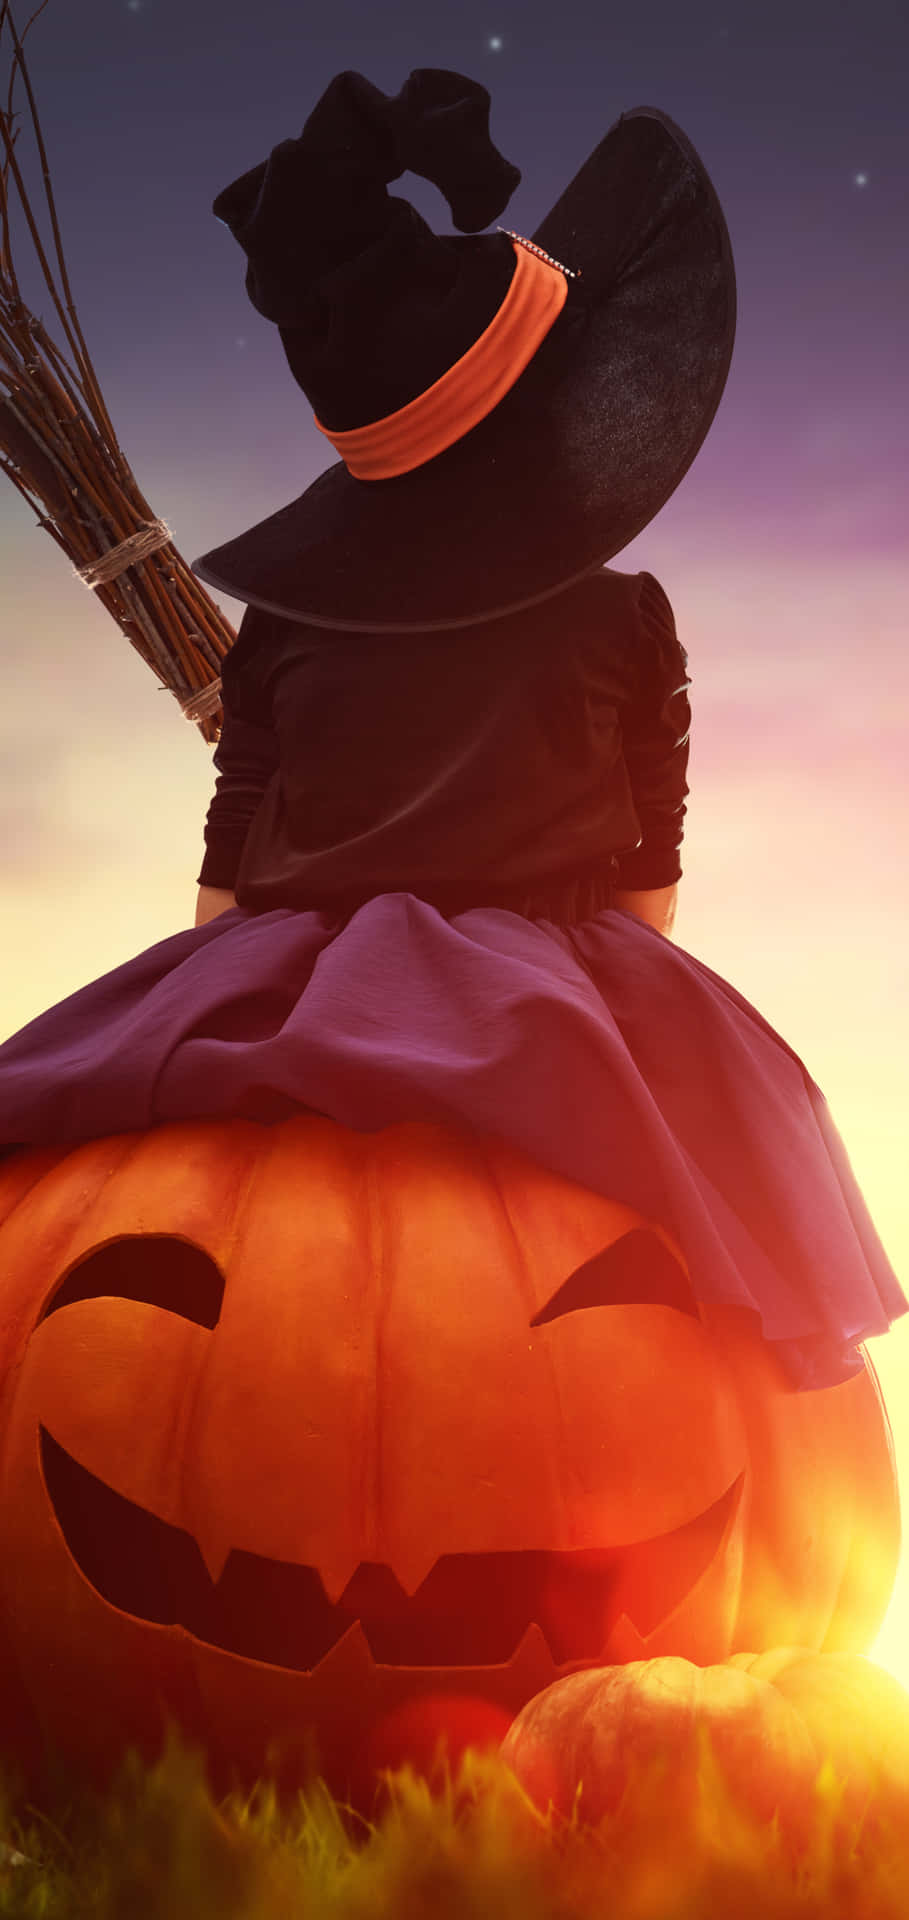 Halloween Witch Pumpkin Sunset Wallpaper